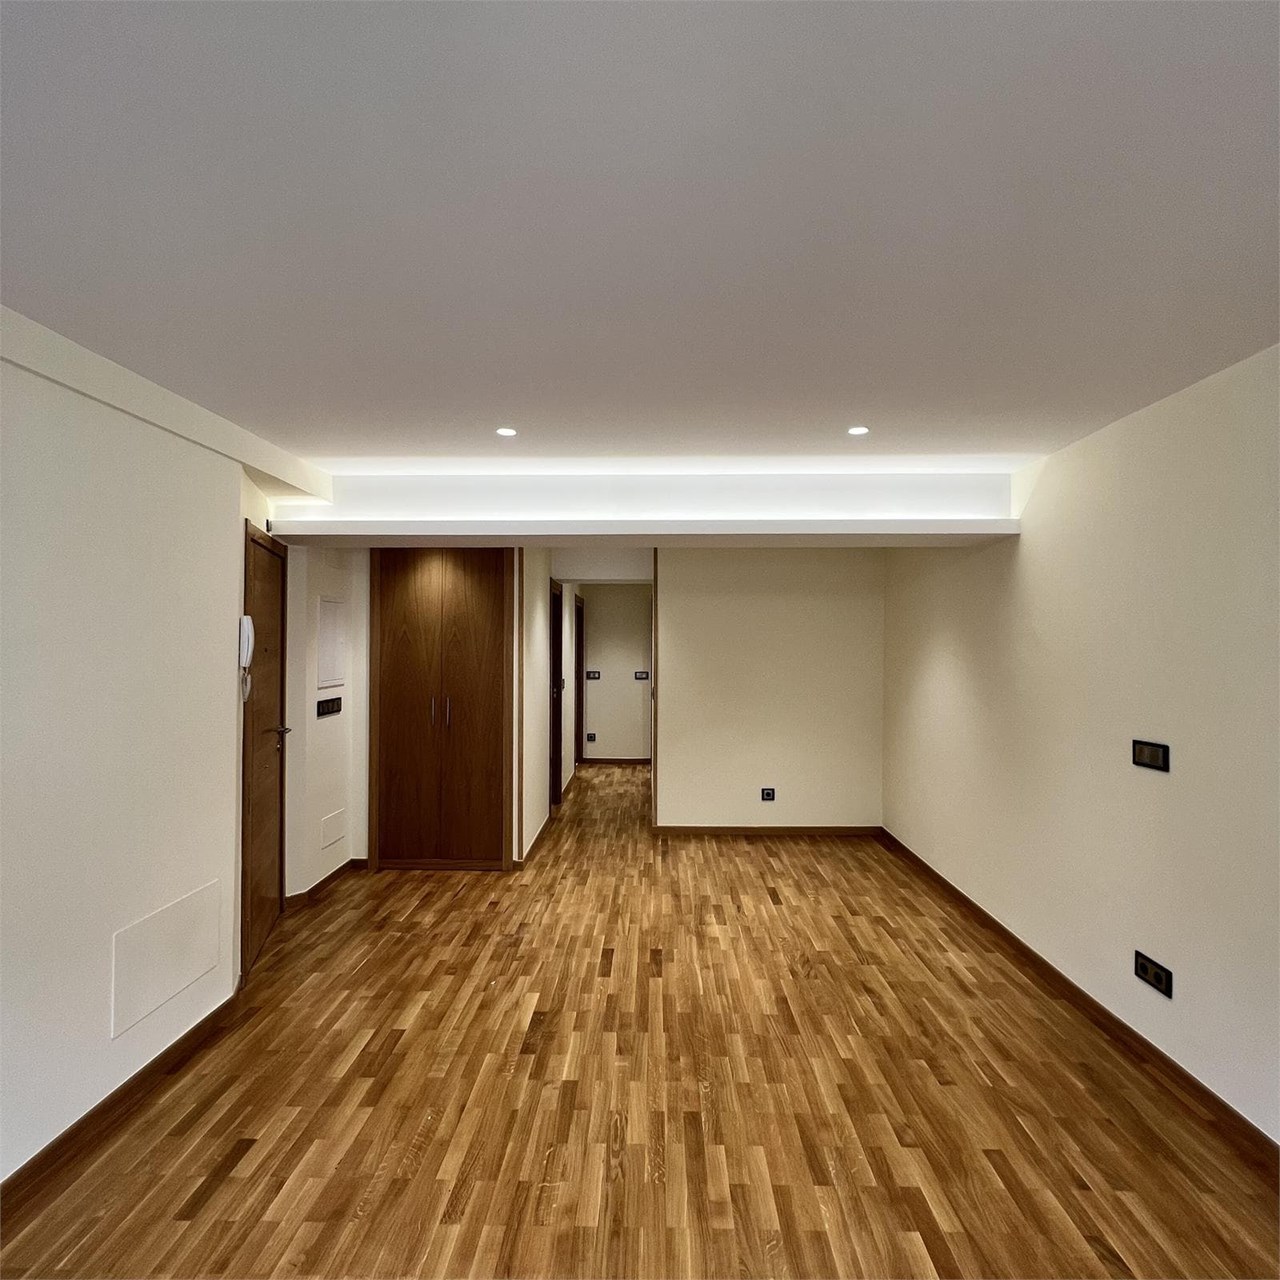 Foto 4 Apartamento en Teresa Herrera, ubicado en el Ensanche de A Coruña